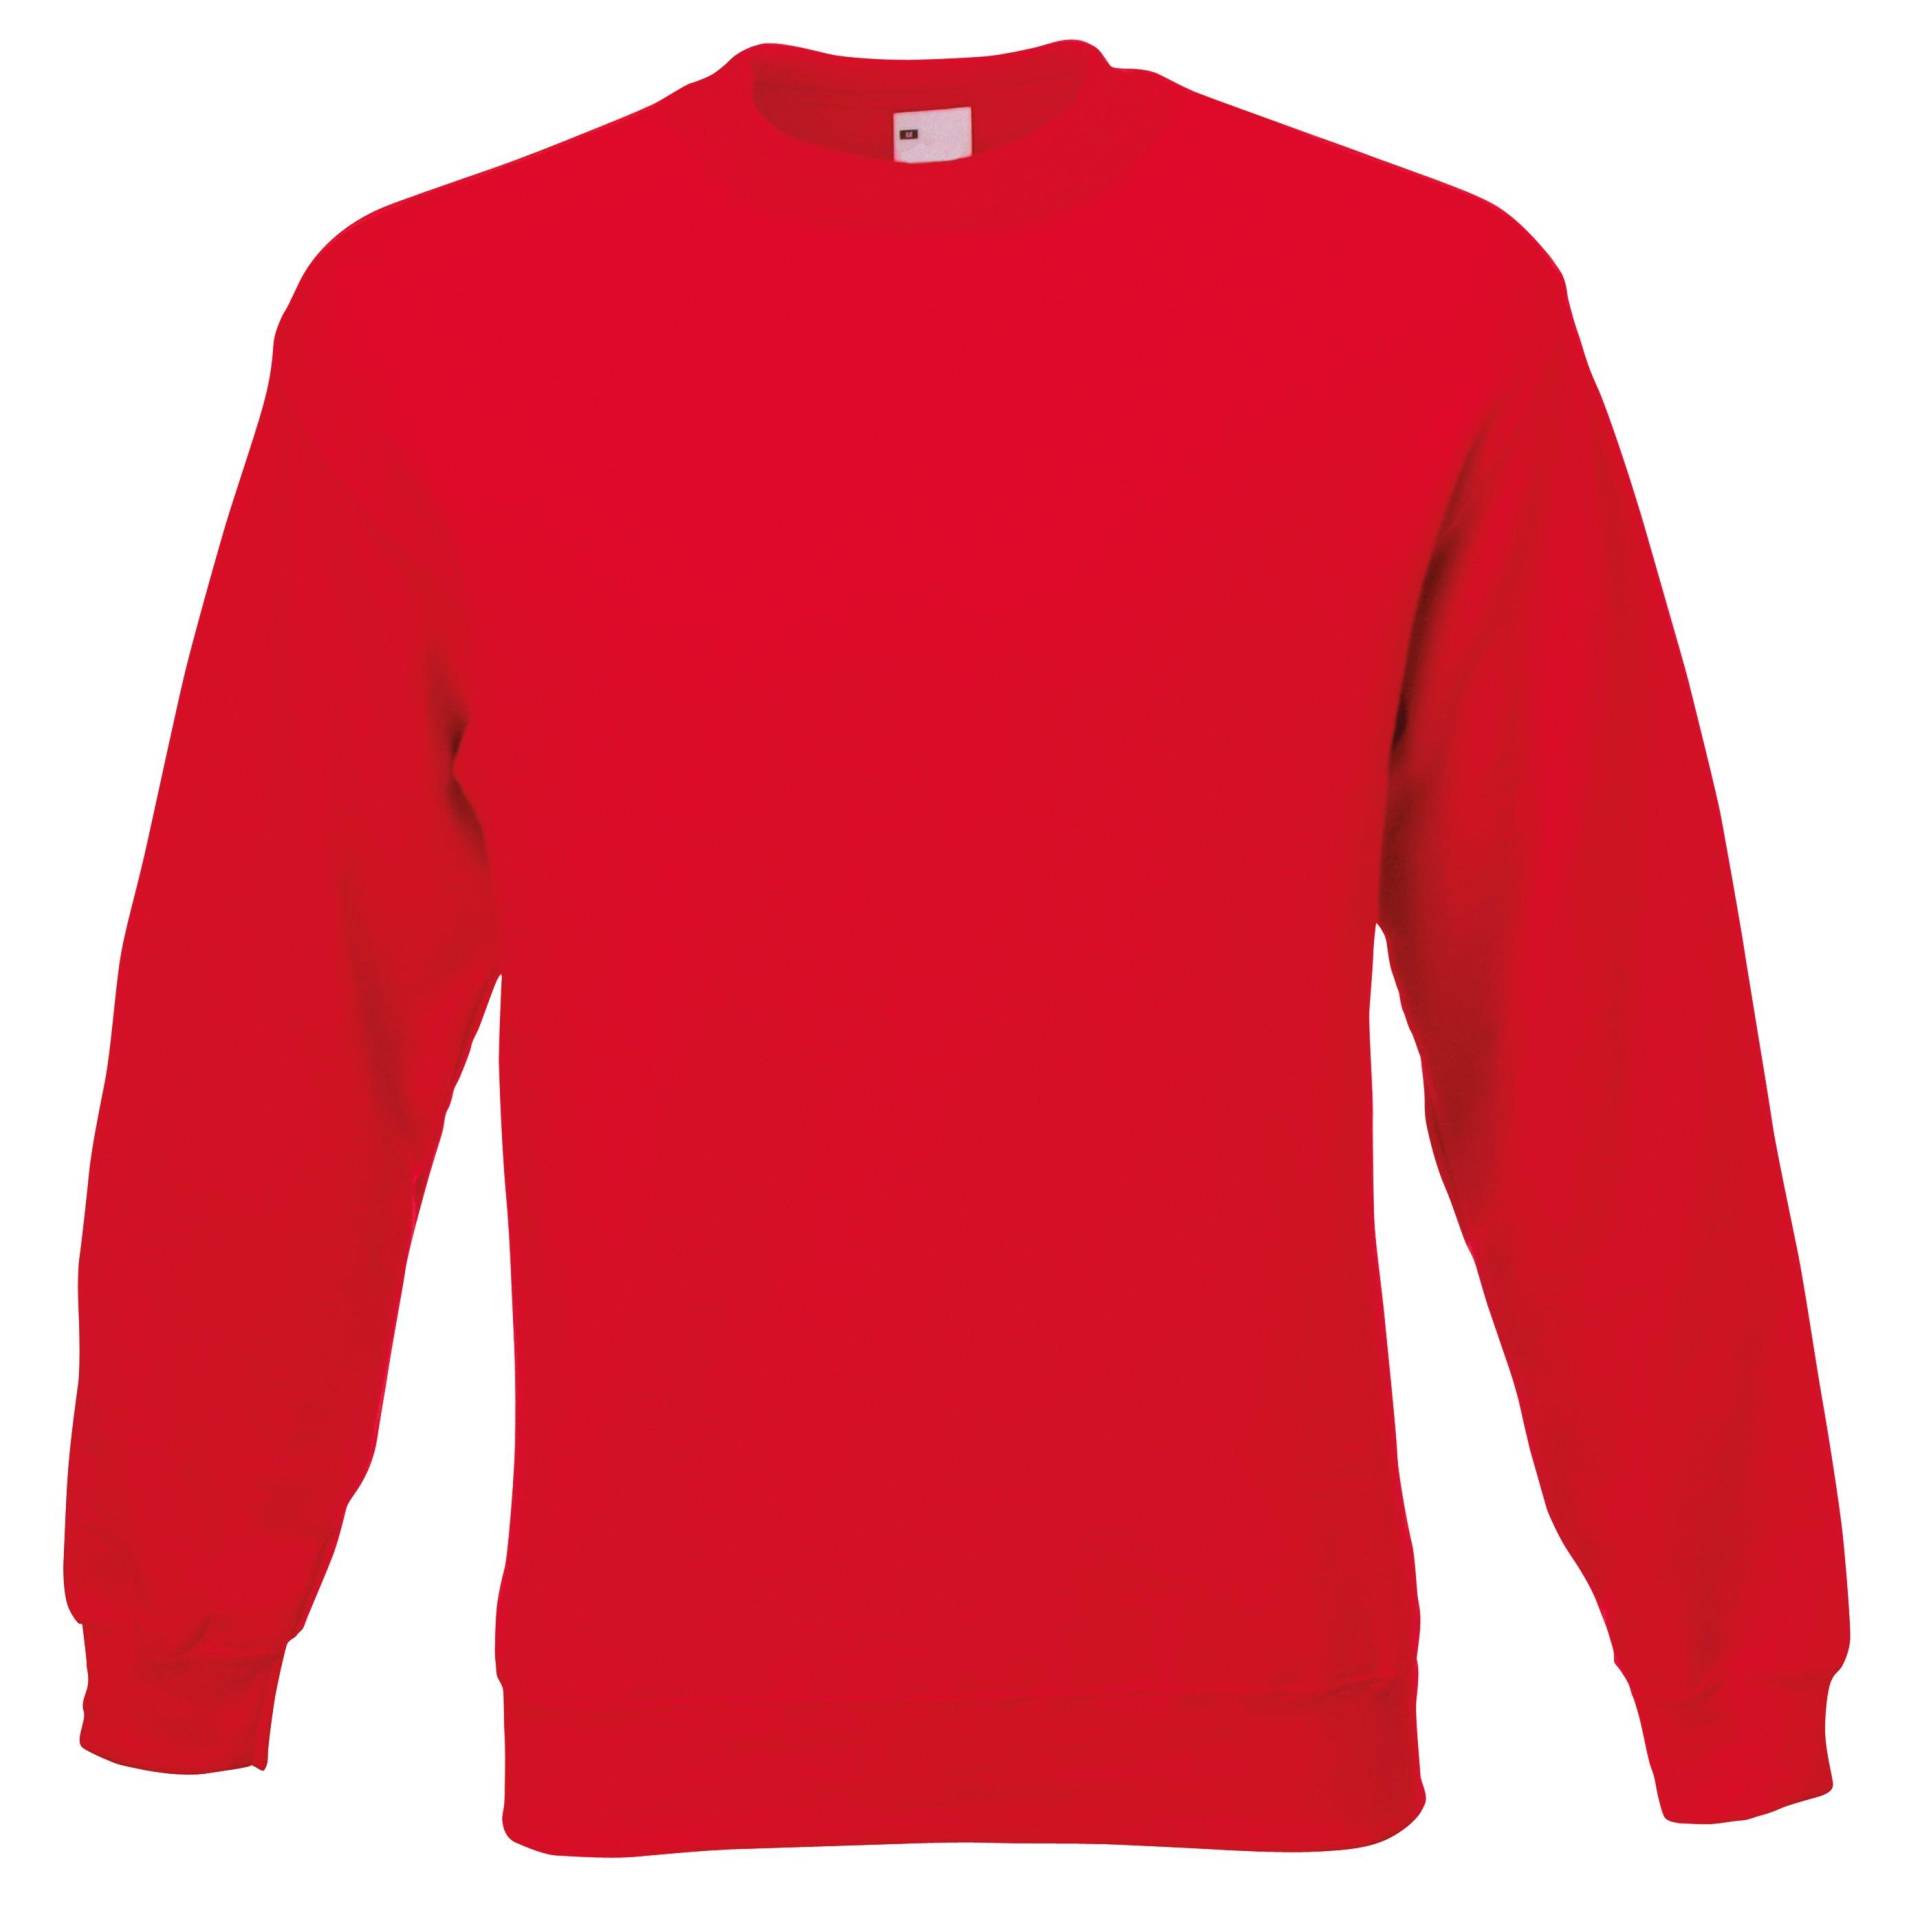 Männer Jersey Sweater Herren Rot Bunt L von Universal Textiles